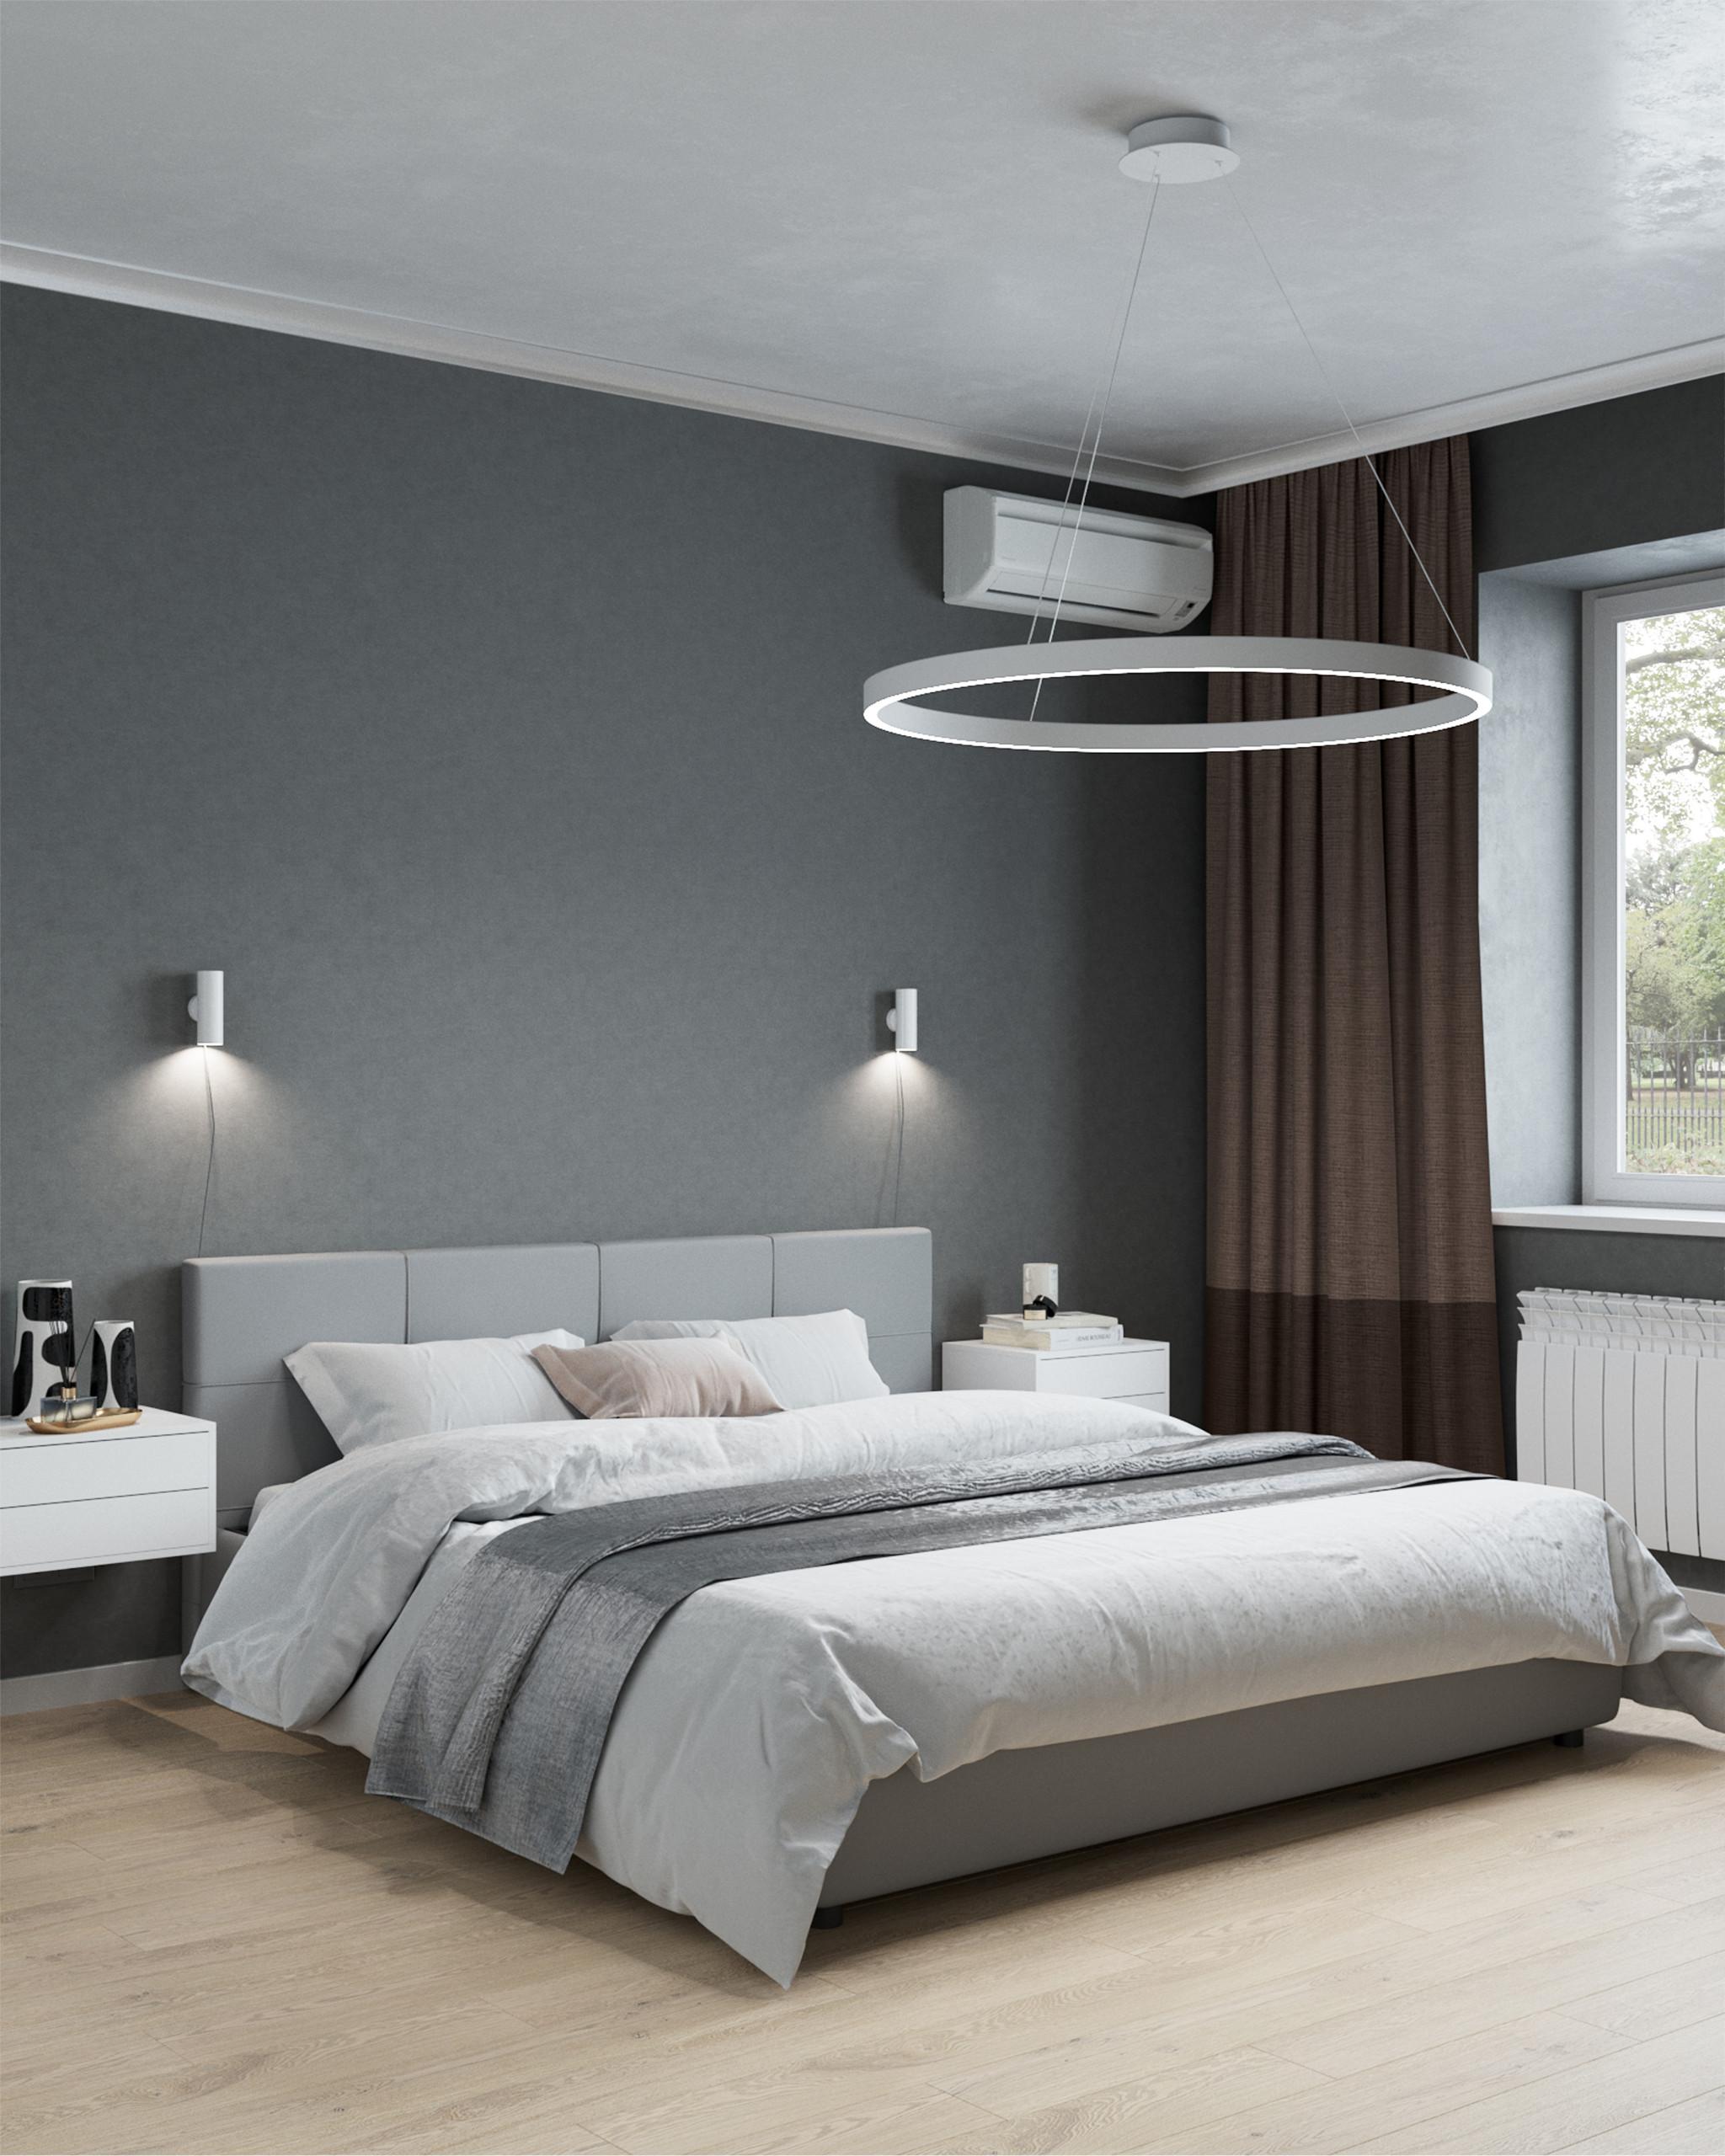 Интерьер спальни с рейками с подсветкой и светильниками над кроватью в современном стиле